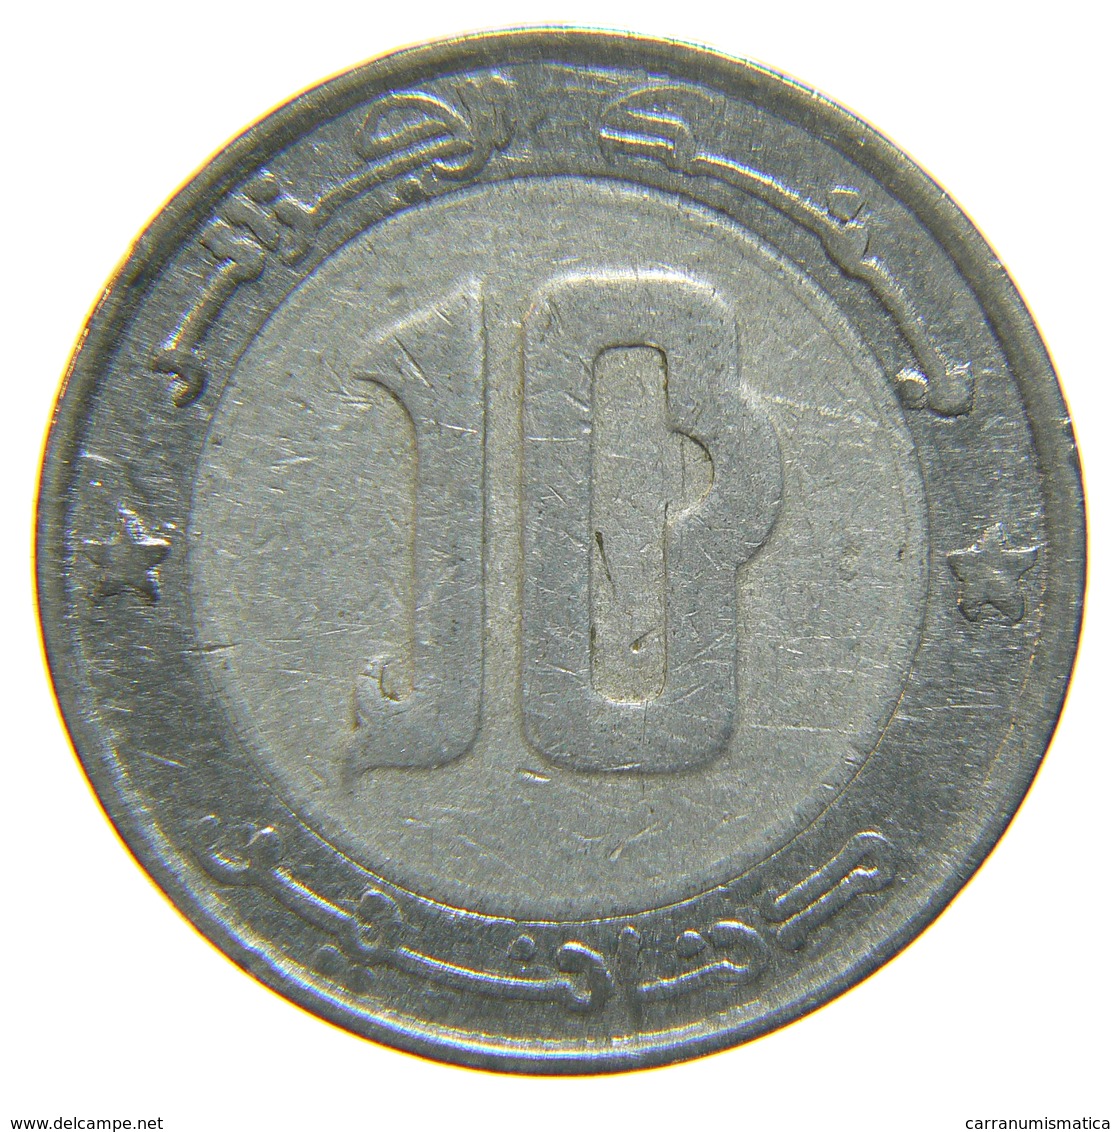 [NC] ALGERIA - 10 DINARS - 2002 - BIMETALLIC COIN - Algeria